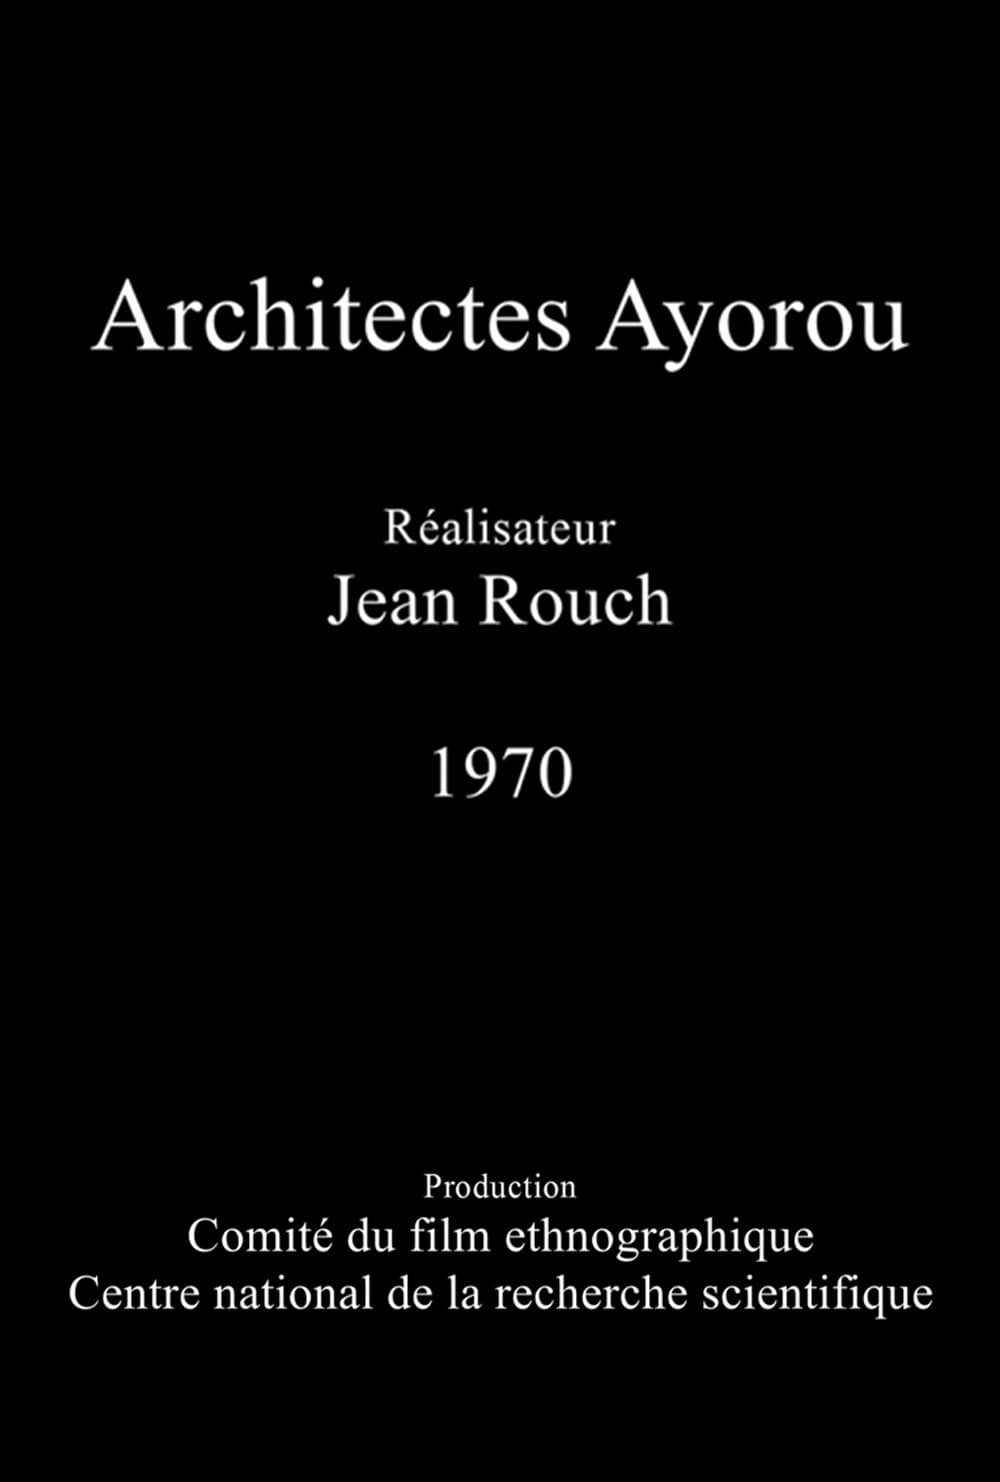 Architects of Ayorou